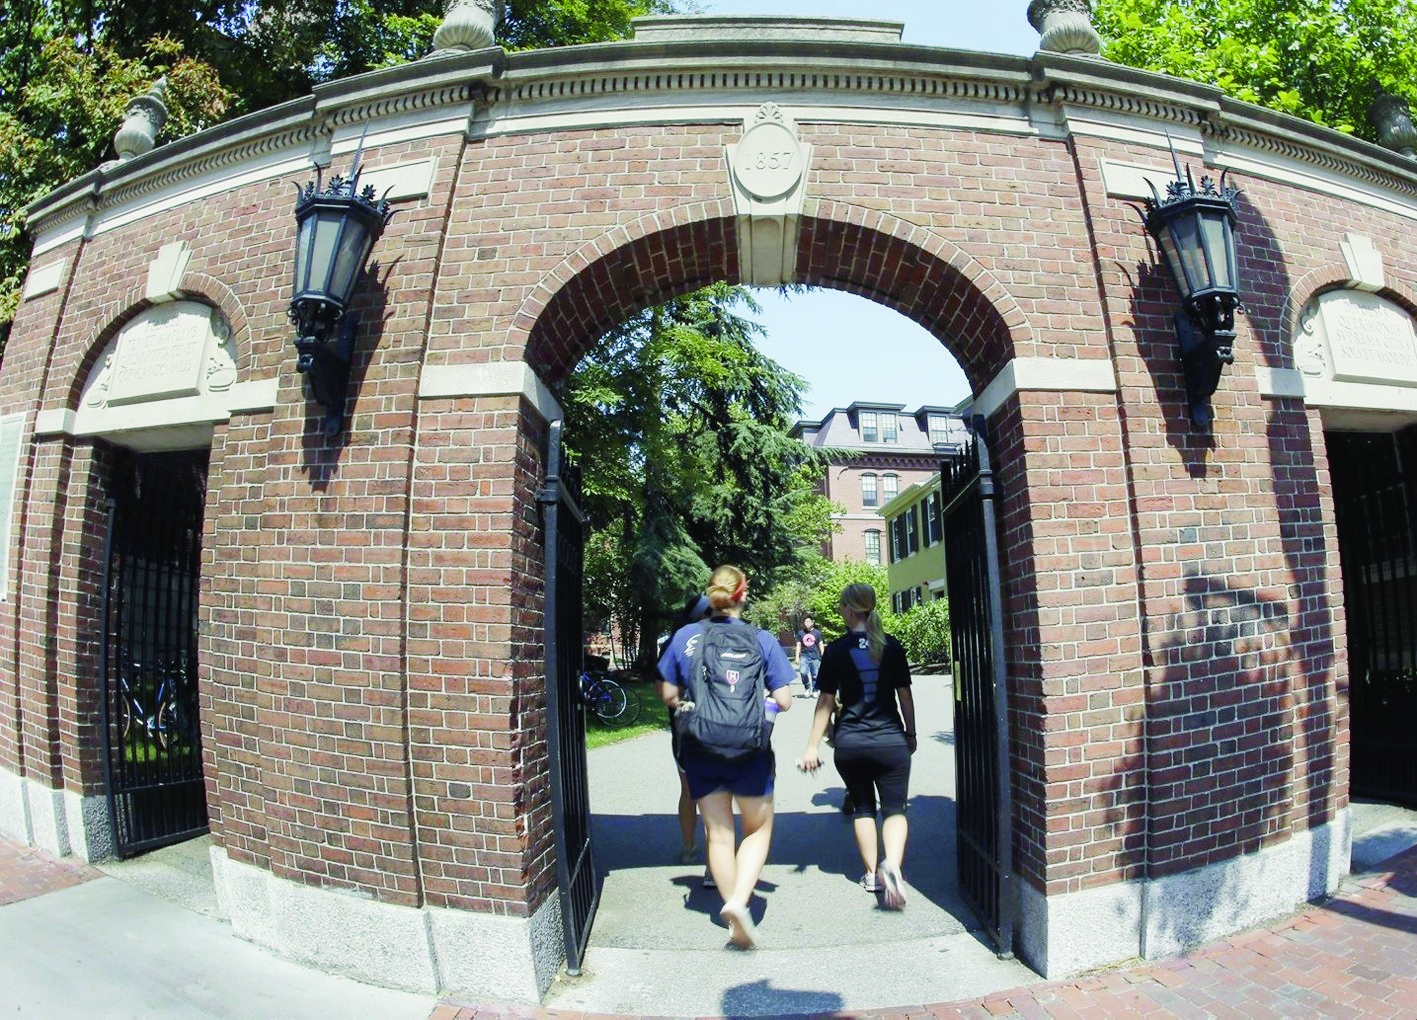 L'équipe masculine de football de la prestigieuse Université de Harvard à Boston a été suspendue. Les footballeurs jugeaient le physique des membres de l'équipe féminine, des propos accompagnés d'autres commentaires sexistes.